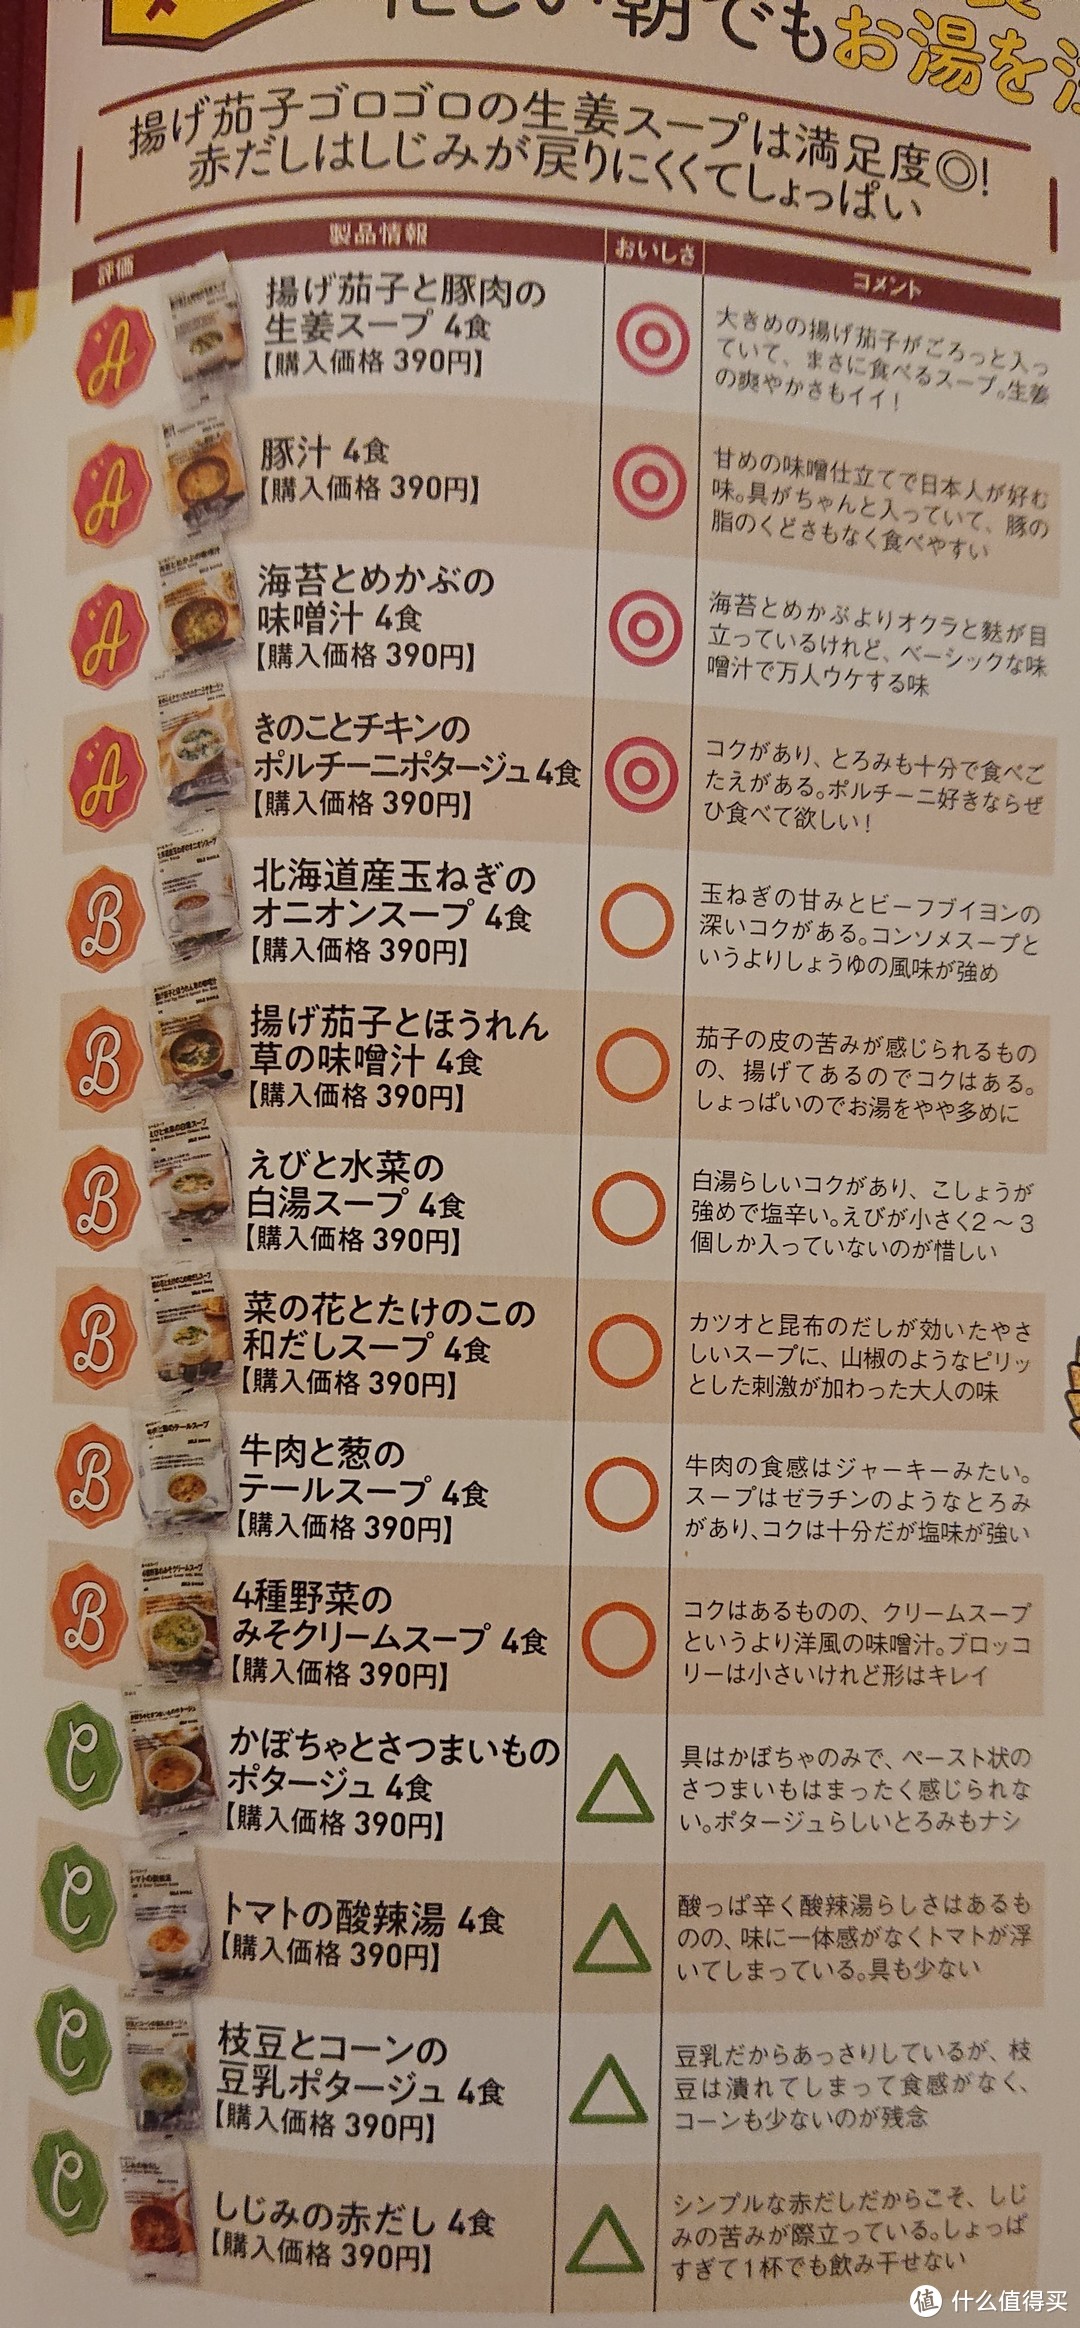 日语家居品导购杂志《人气店铺大百科》自译*7无印汤包零食